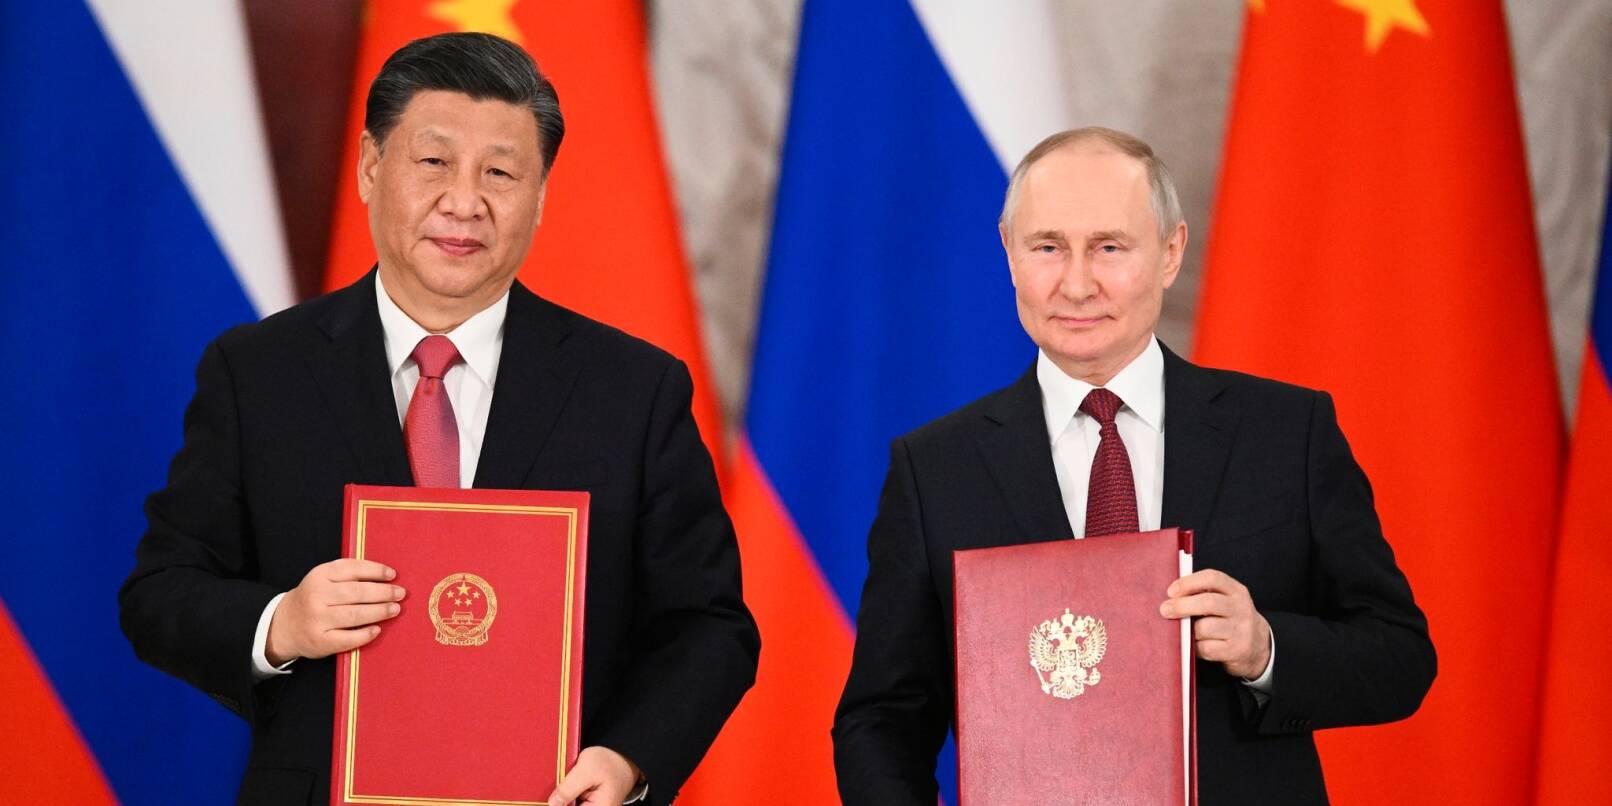 Chinas Präsident Xi Jinping und sein russischer Amtskollege Wladimir Putin zeigen während einer Unterzeichnungszeremonie Mappen mit den neuen Abkommen.